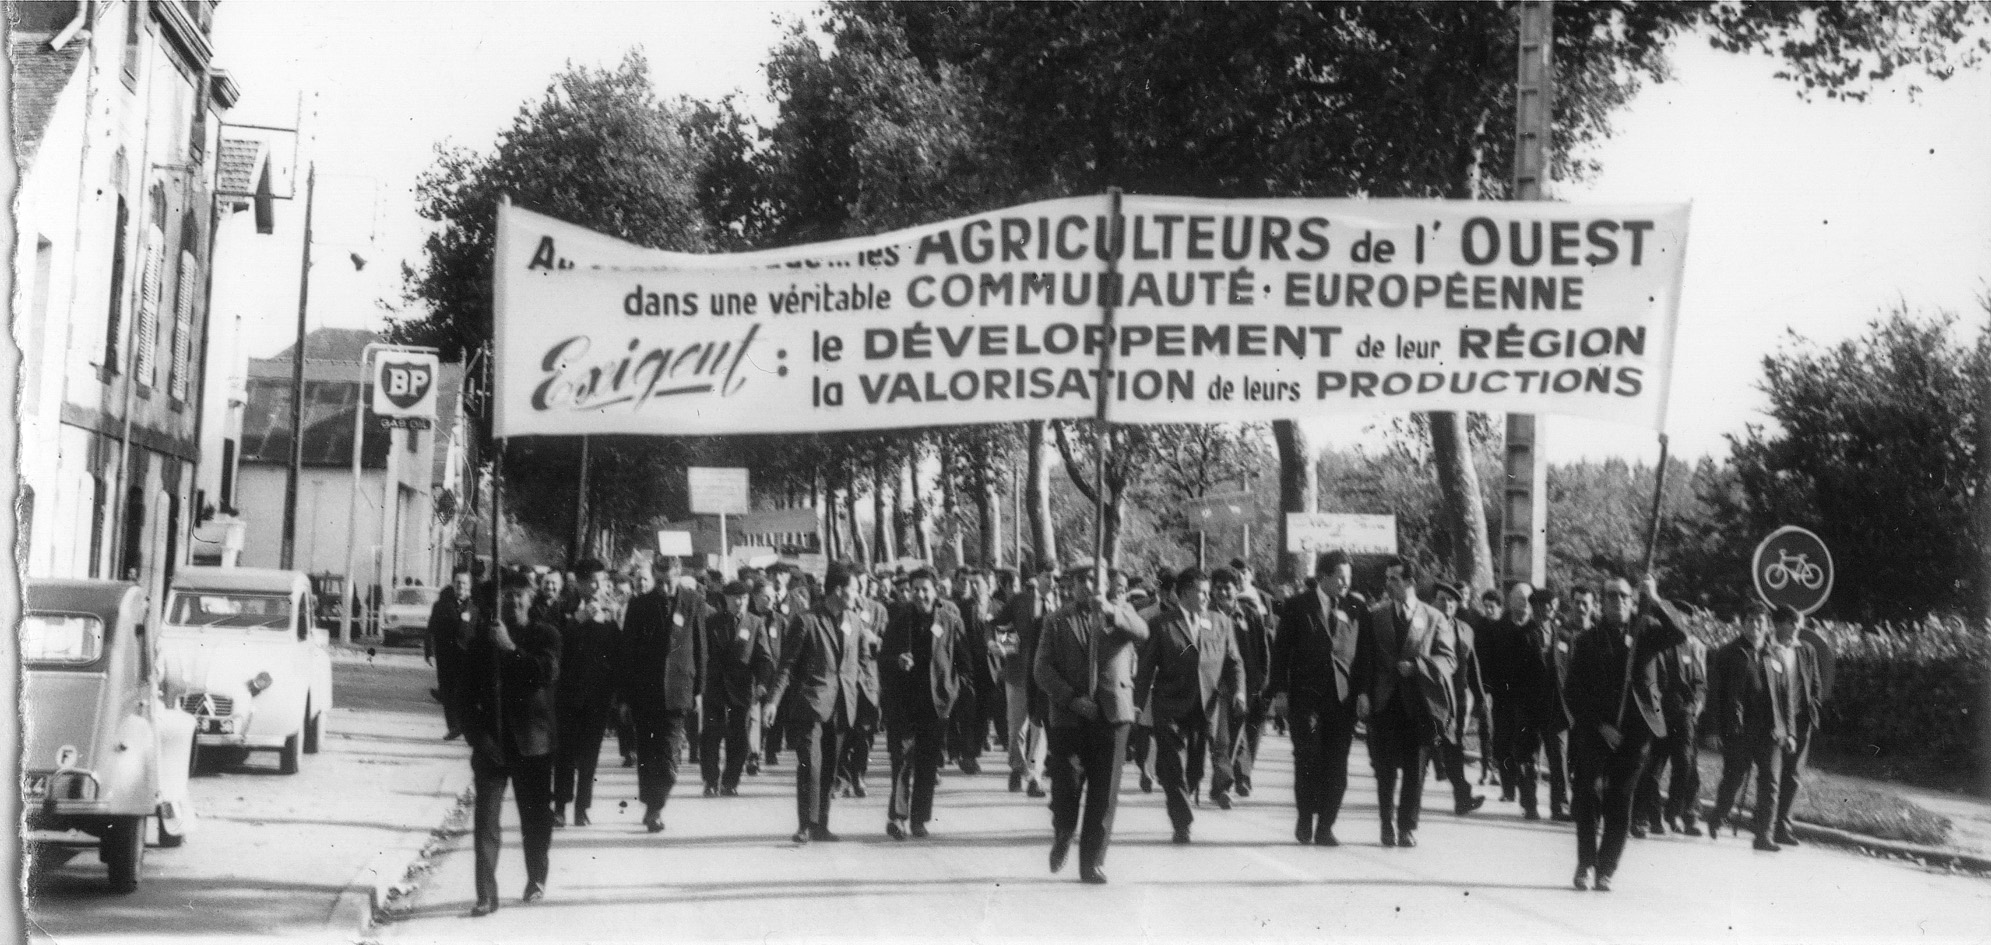 Le 26 juin 1967, entre 10 et 15 000 paysans manifestent à Redon à l’appel de la Fédération régionale des syndicats d’exploitants agricoles de l’Ouest. Le rassemblement est suivi de vifs heurts avec les forces de l’ordre, (FDSEA 353, CHT, Nantes).